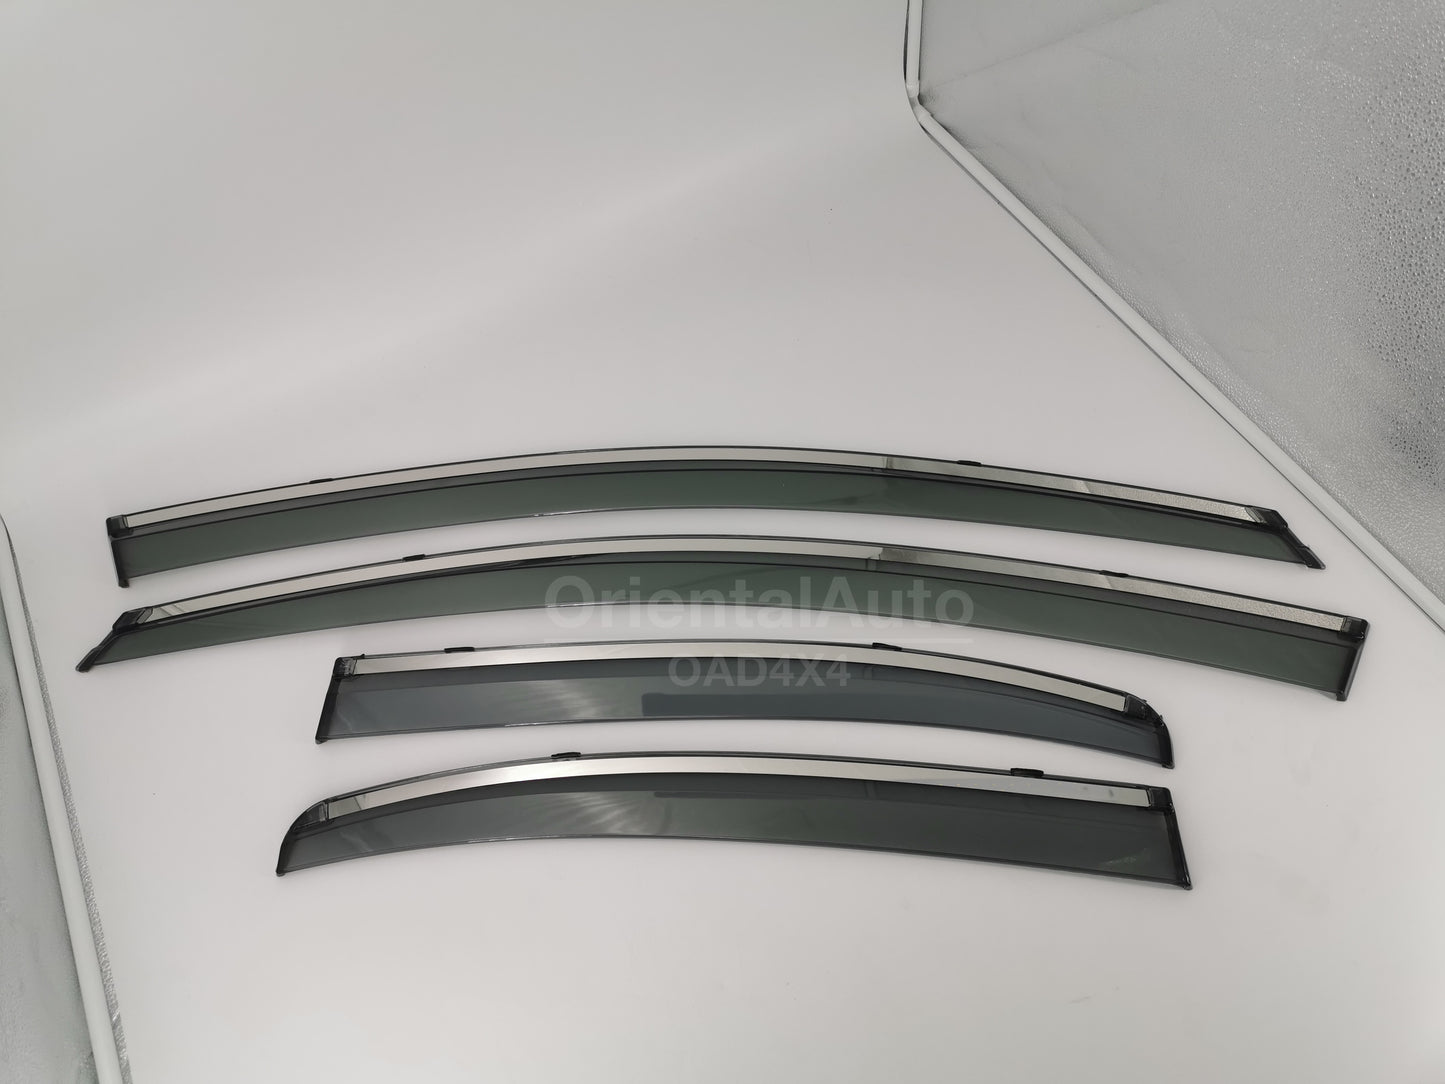 Injection Chrome Weathershields Weather Shields Window Visor For Mitsubishi Lancer 2007+